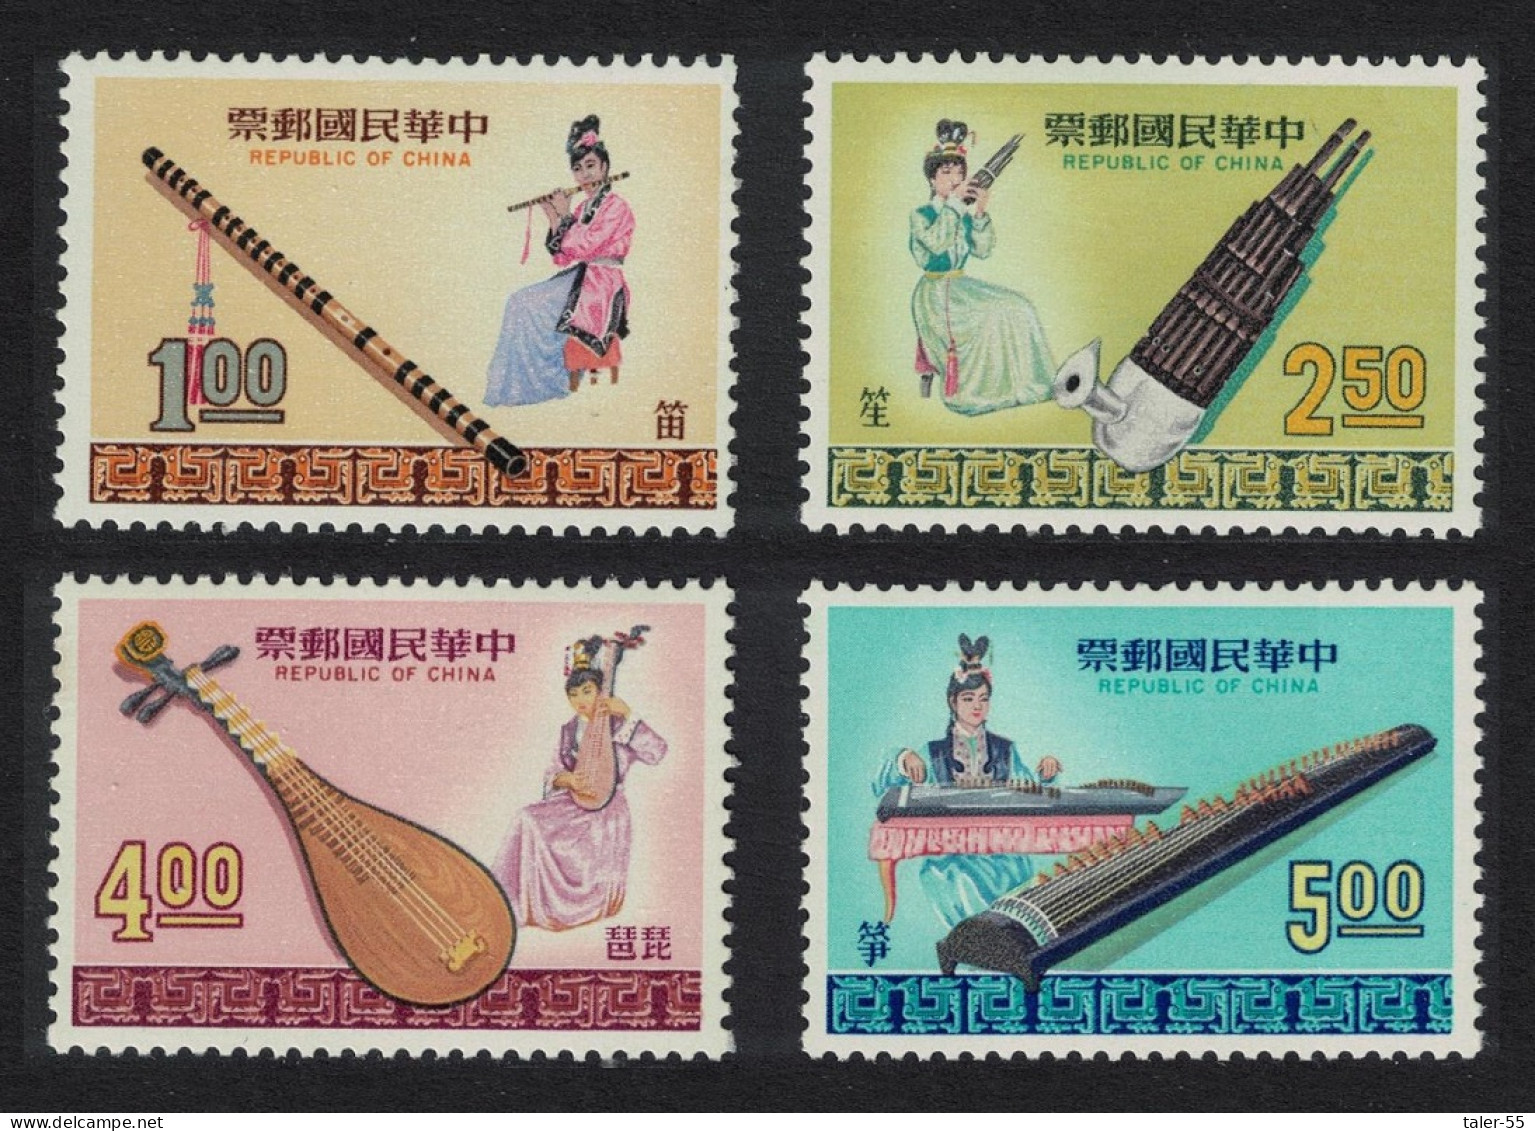 Taiwan Chinese Musical Instruments 4v 1969 MNH SG#690-693 - Nuevos